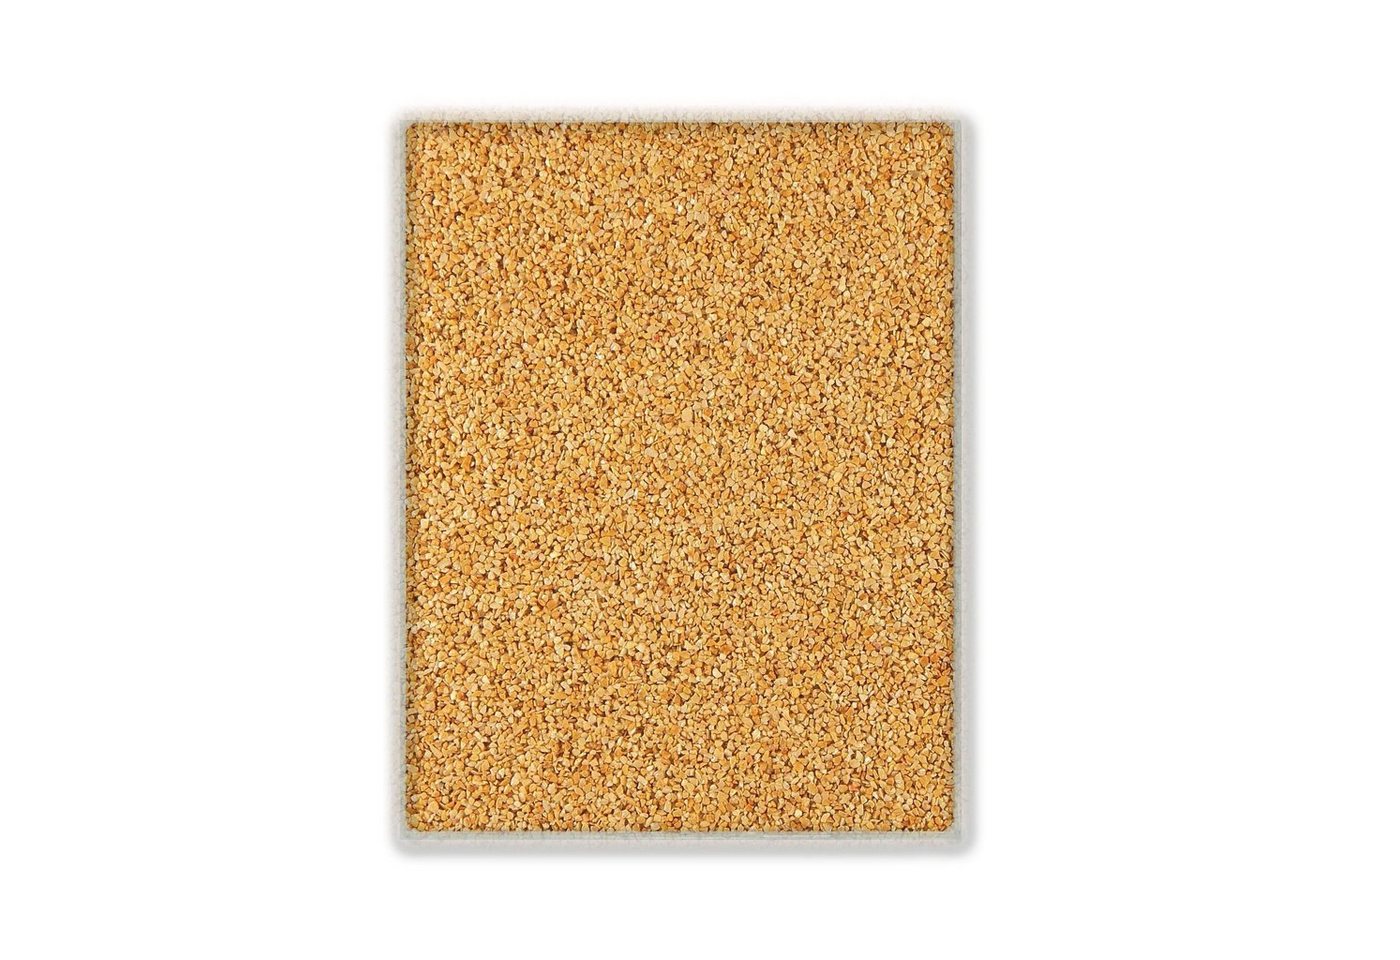 Terralith® Designboden Farbmuster Kompaktboden -giallo-, Originalware aus der Charge, die wir in diesem Moment im Abverkauf haben. von Terralith®